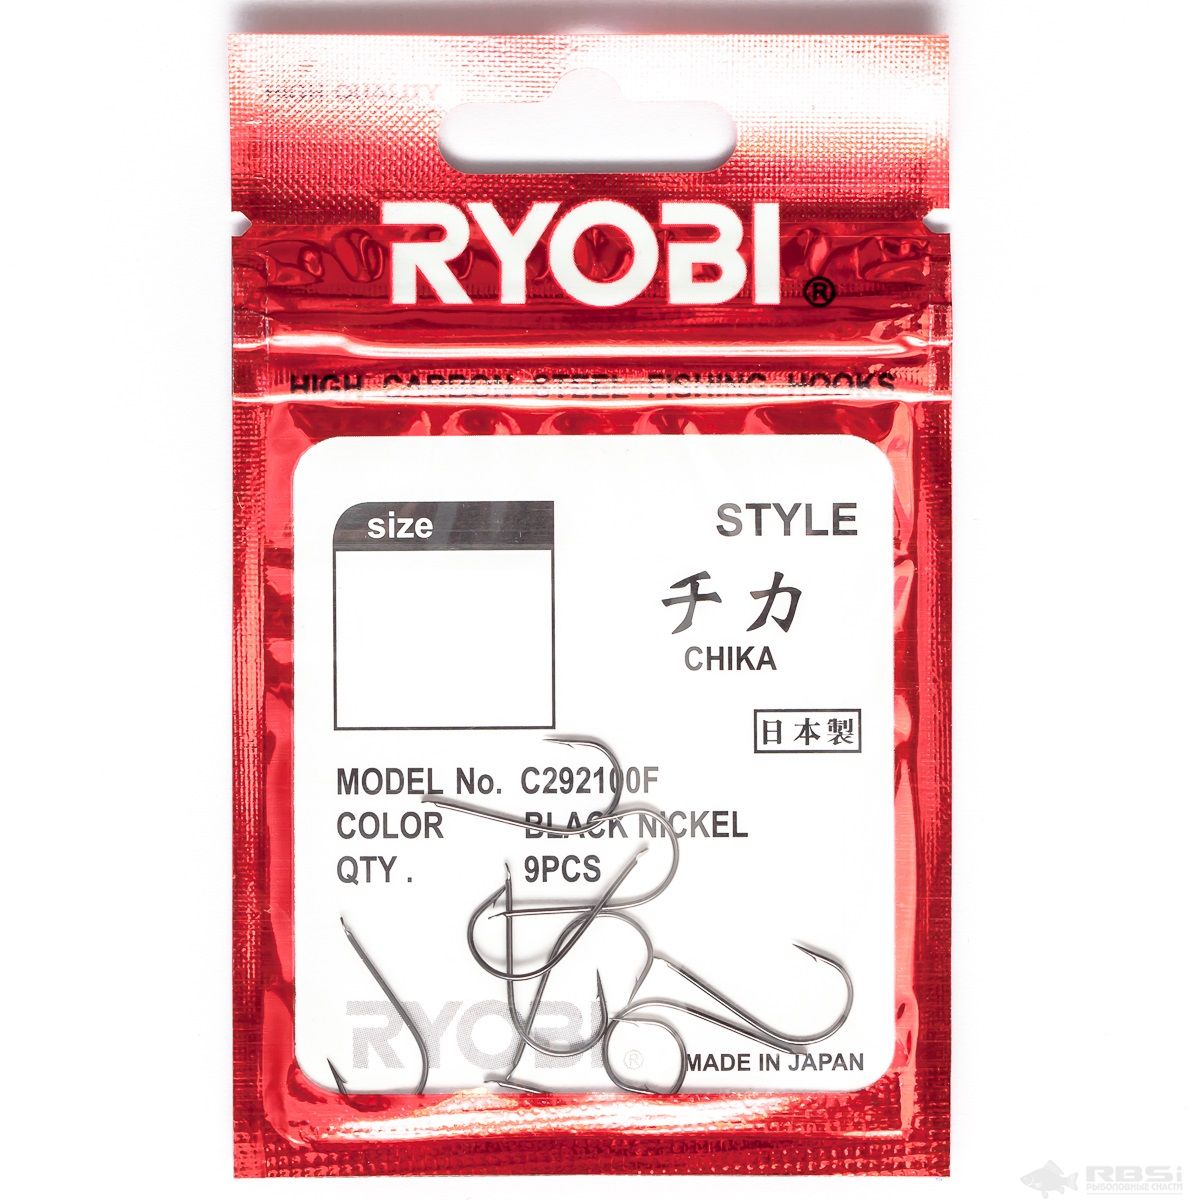 RYOBI CHIKA FLATTED BN #2.5